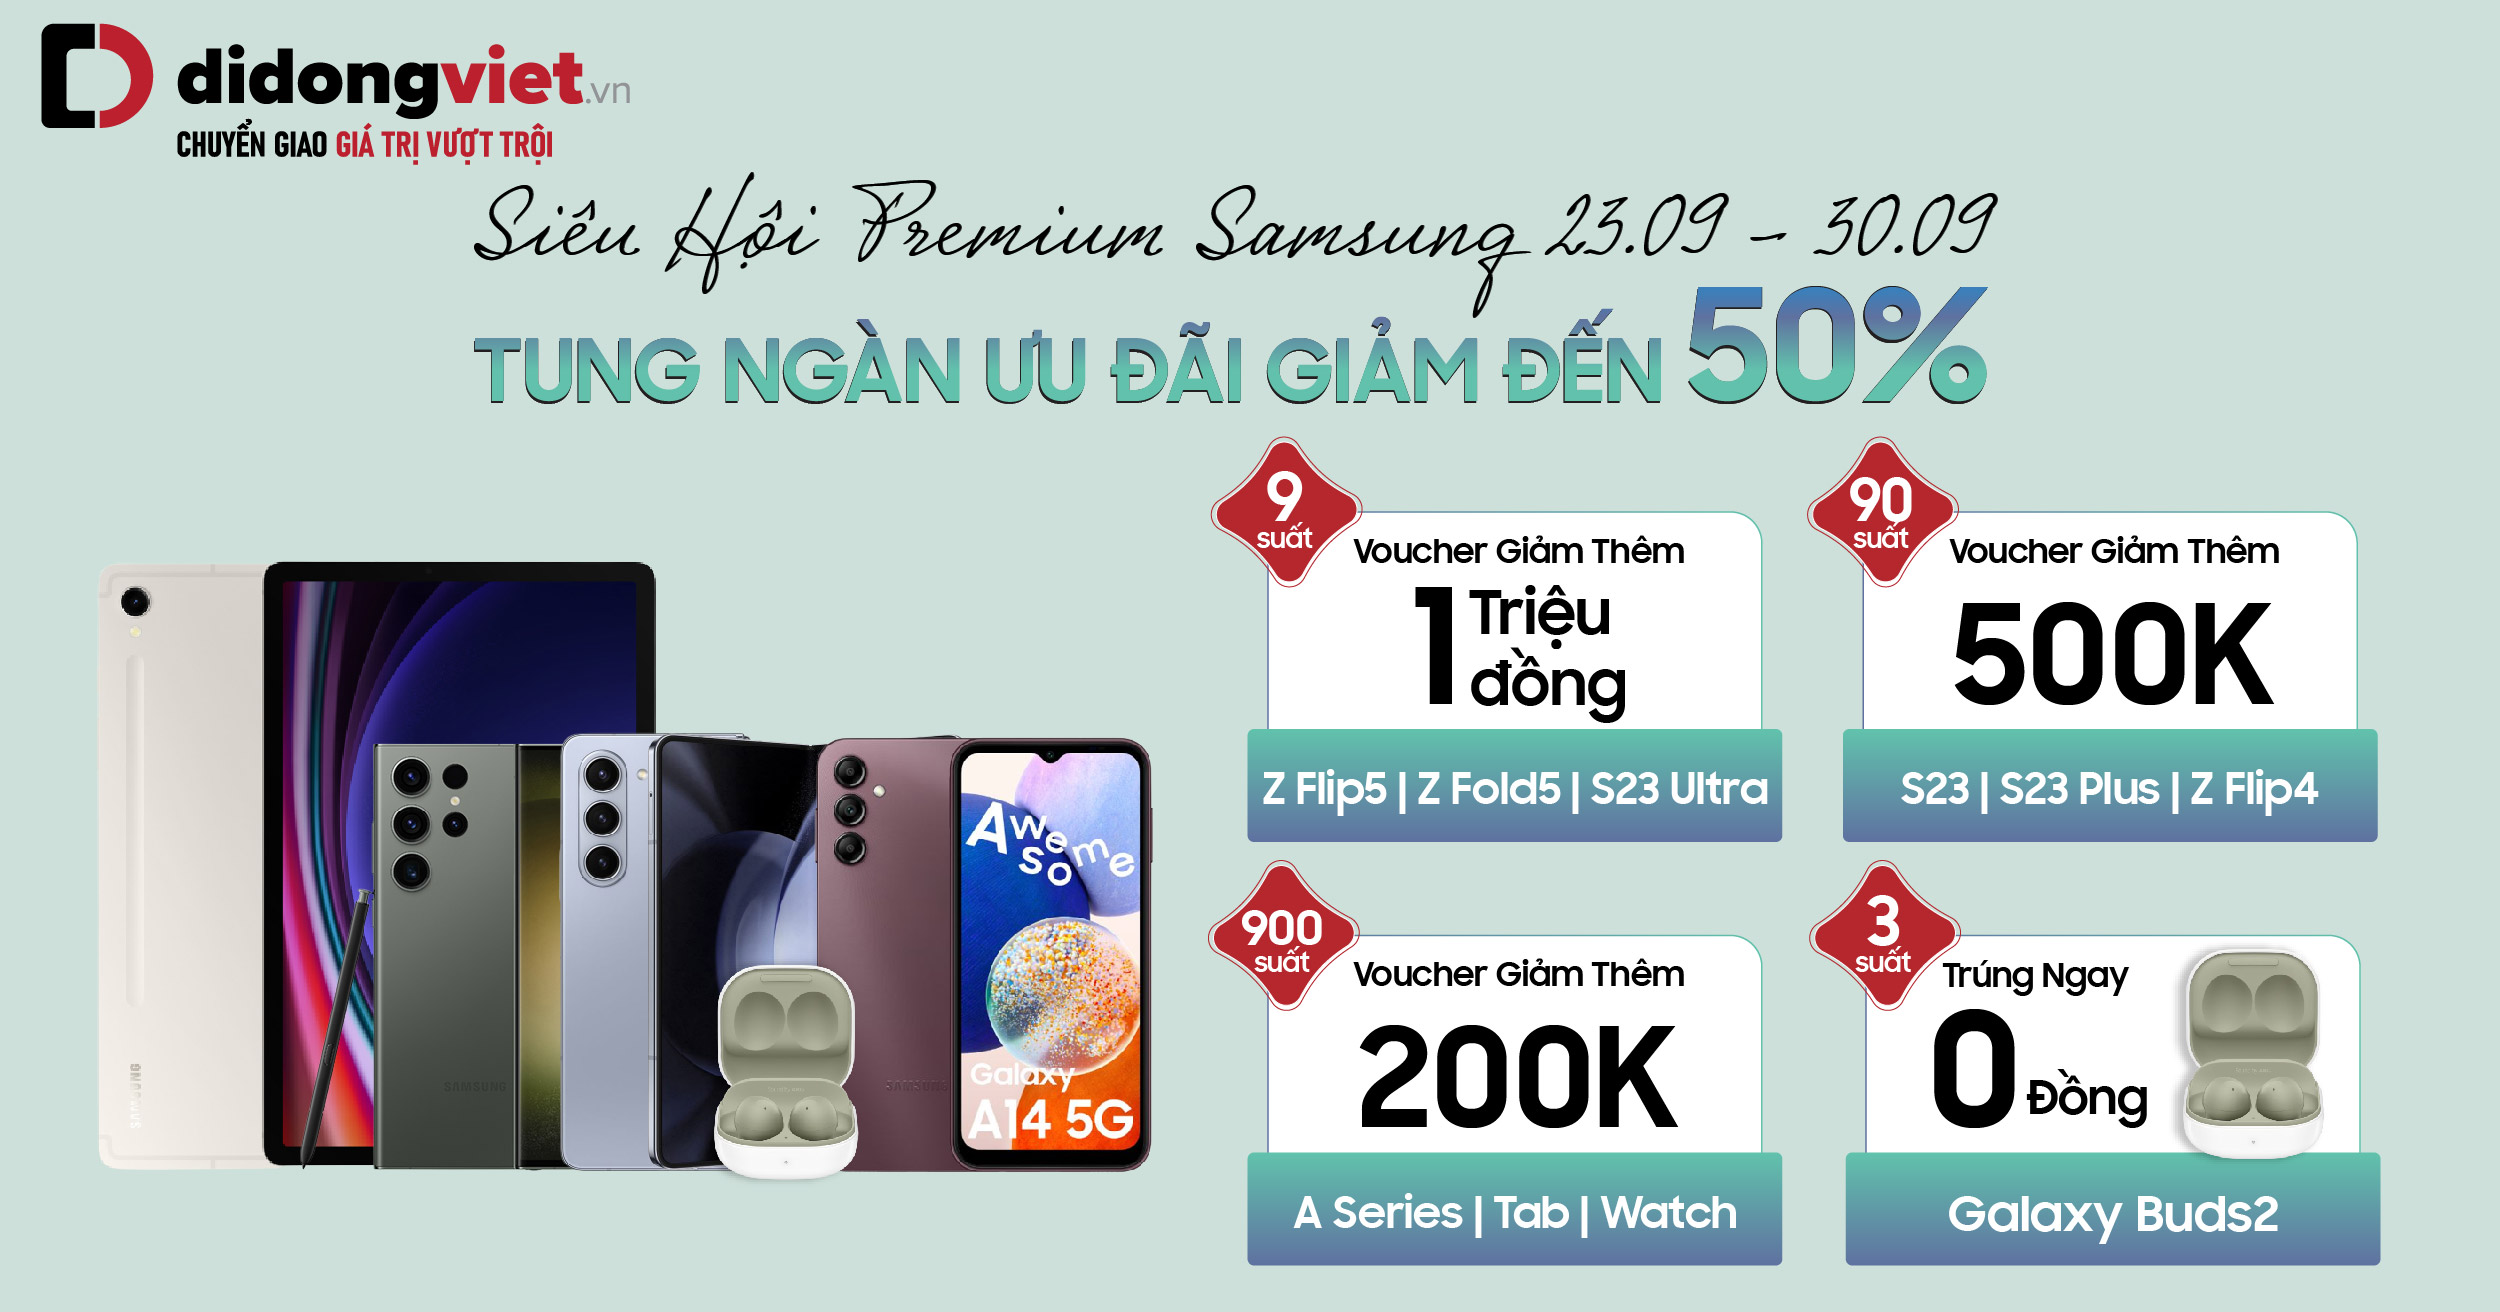 Siêu hội Premium Samsung, tung ngàn ưu đãi tại Di Động Việt: Tổng voucher đến 250 triệu, Điện thoại | Tab | Phụ kiện giảm đến 50%, Trả góp 0%, trả trước 0 đồng, Trúng suất Galaxy Buds2 giá chỉ 0 đồng và hàng ngàn ưu đãi hấp dẫn khác. Mua ngay